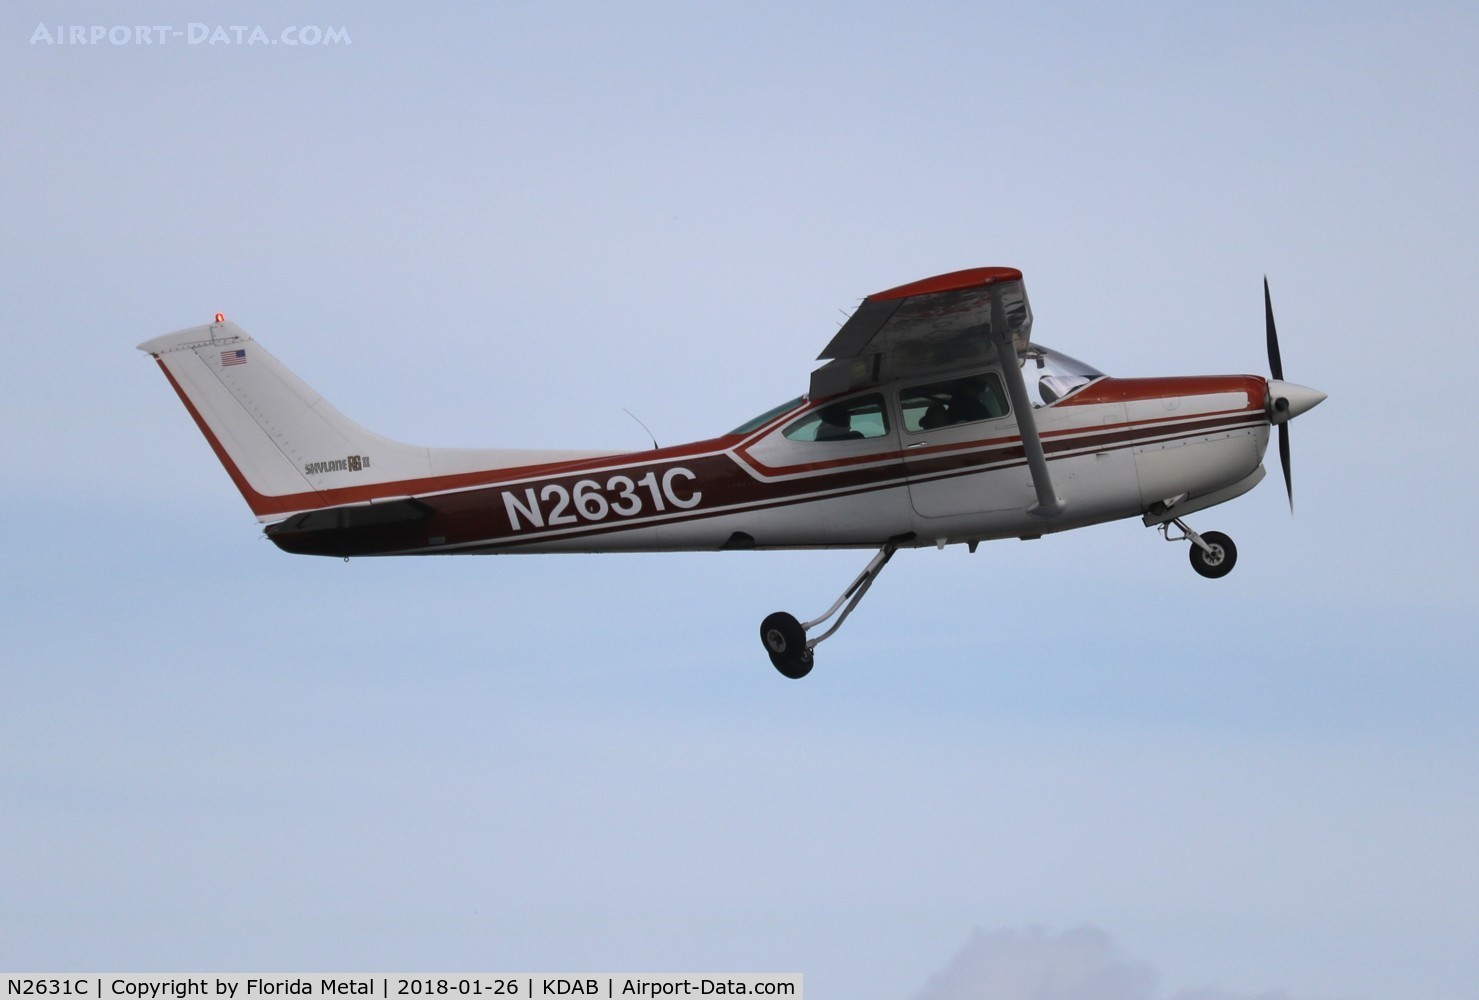 N2631C, 1978 Cessna R182 Skylane RG C/N R18200183, Sebring 2018